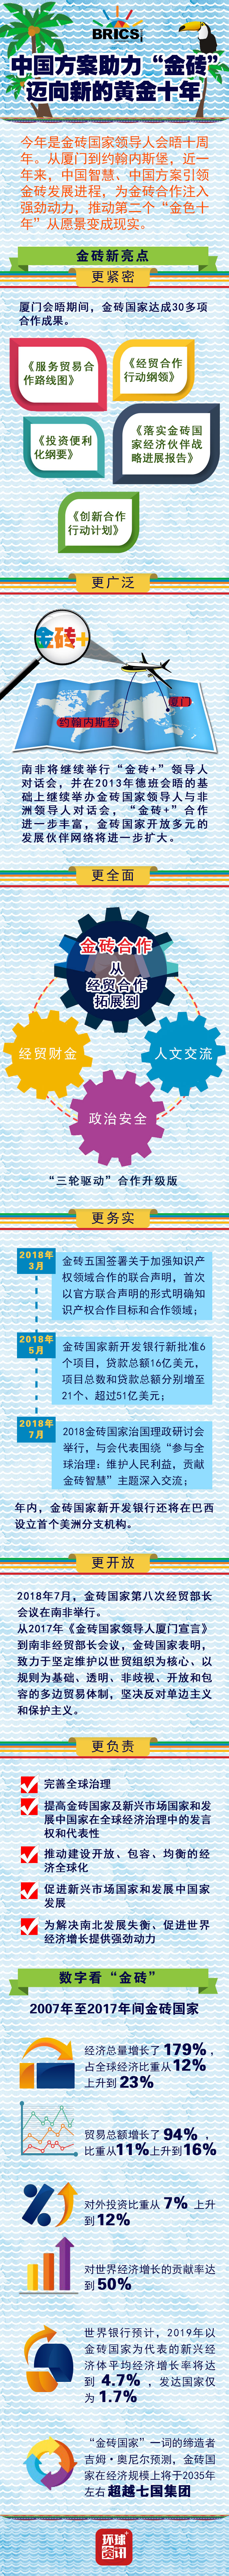 【图解】中国方案助力“金砖”迈向新的黄金十年